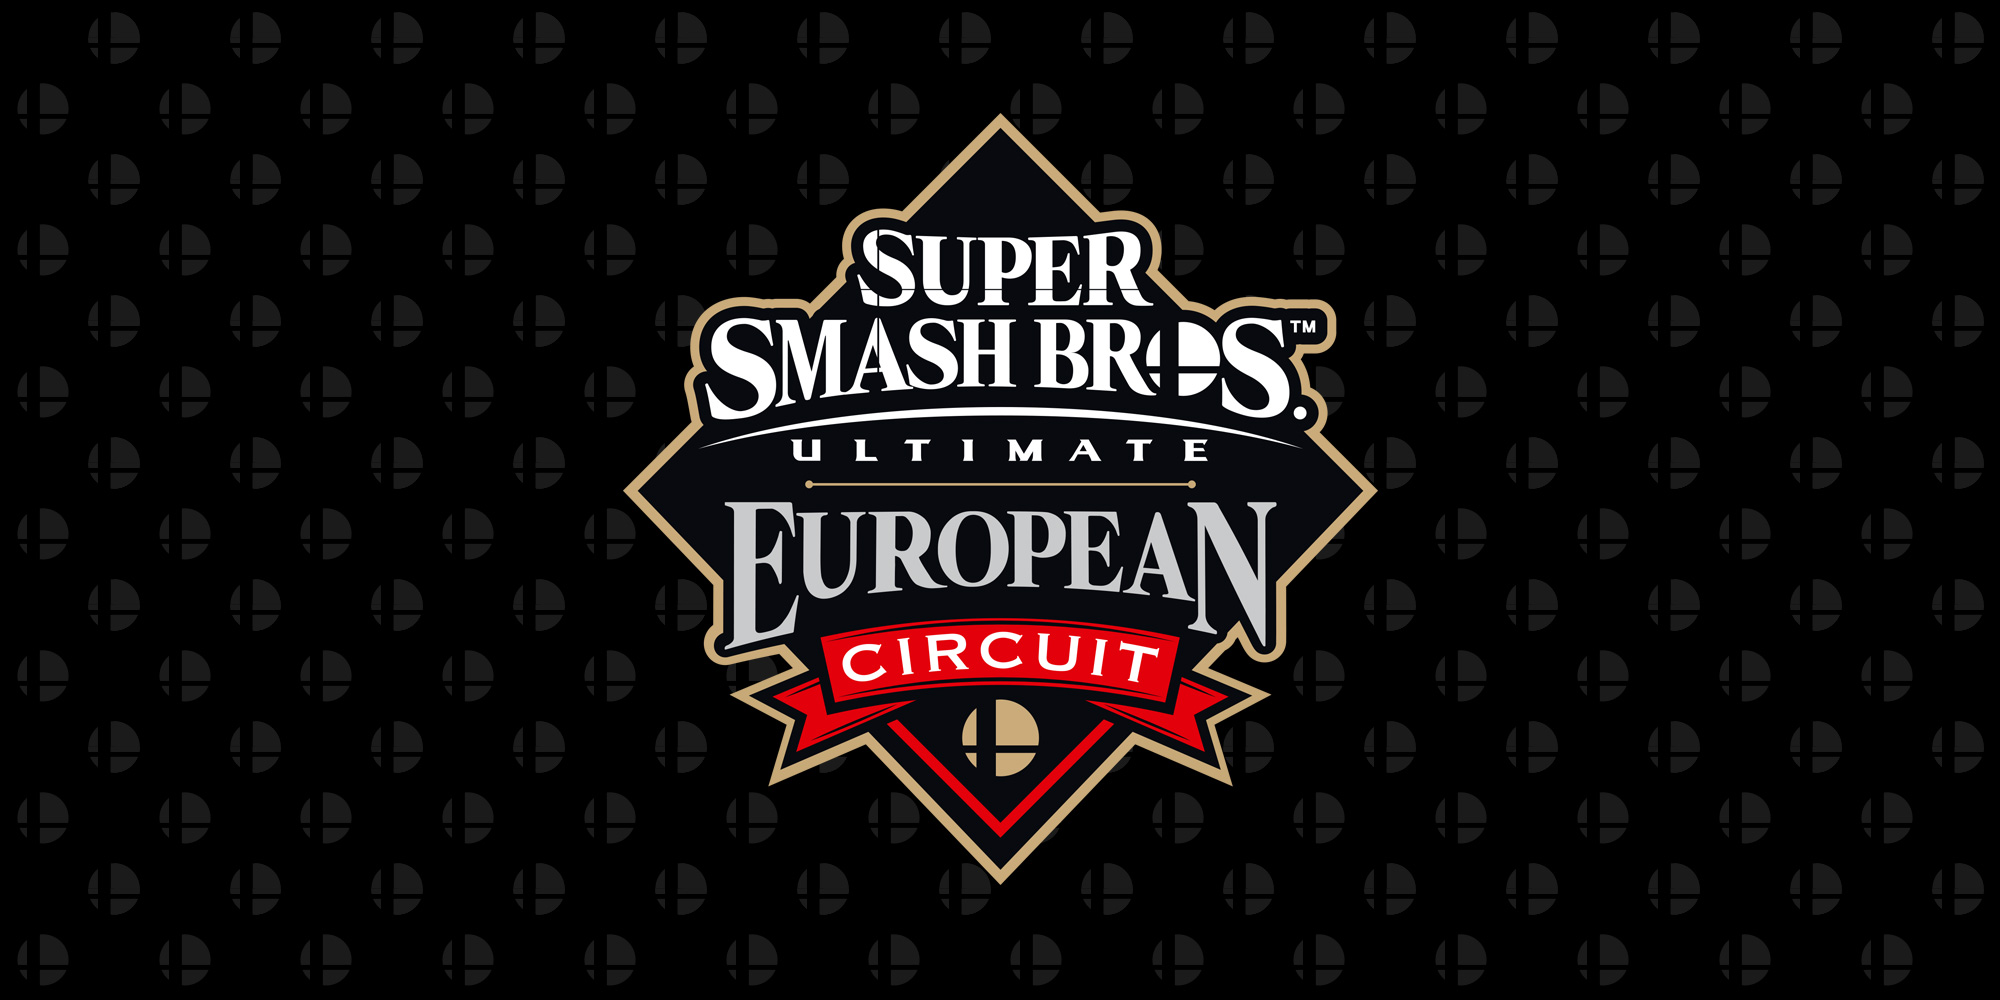 Leffen agguanta il primo posto al DreamHack Winter 2019, il secondo evento del Super Smash Bros. Ultimate European Circuit!